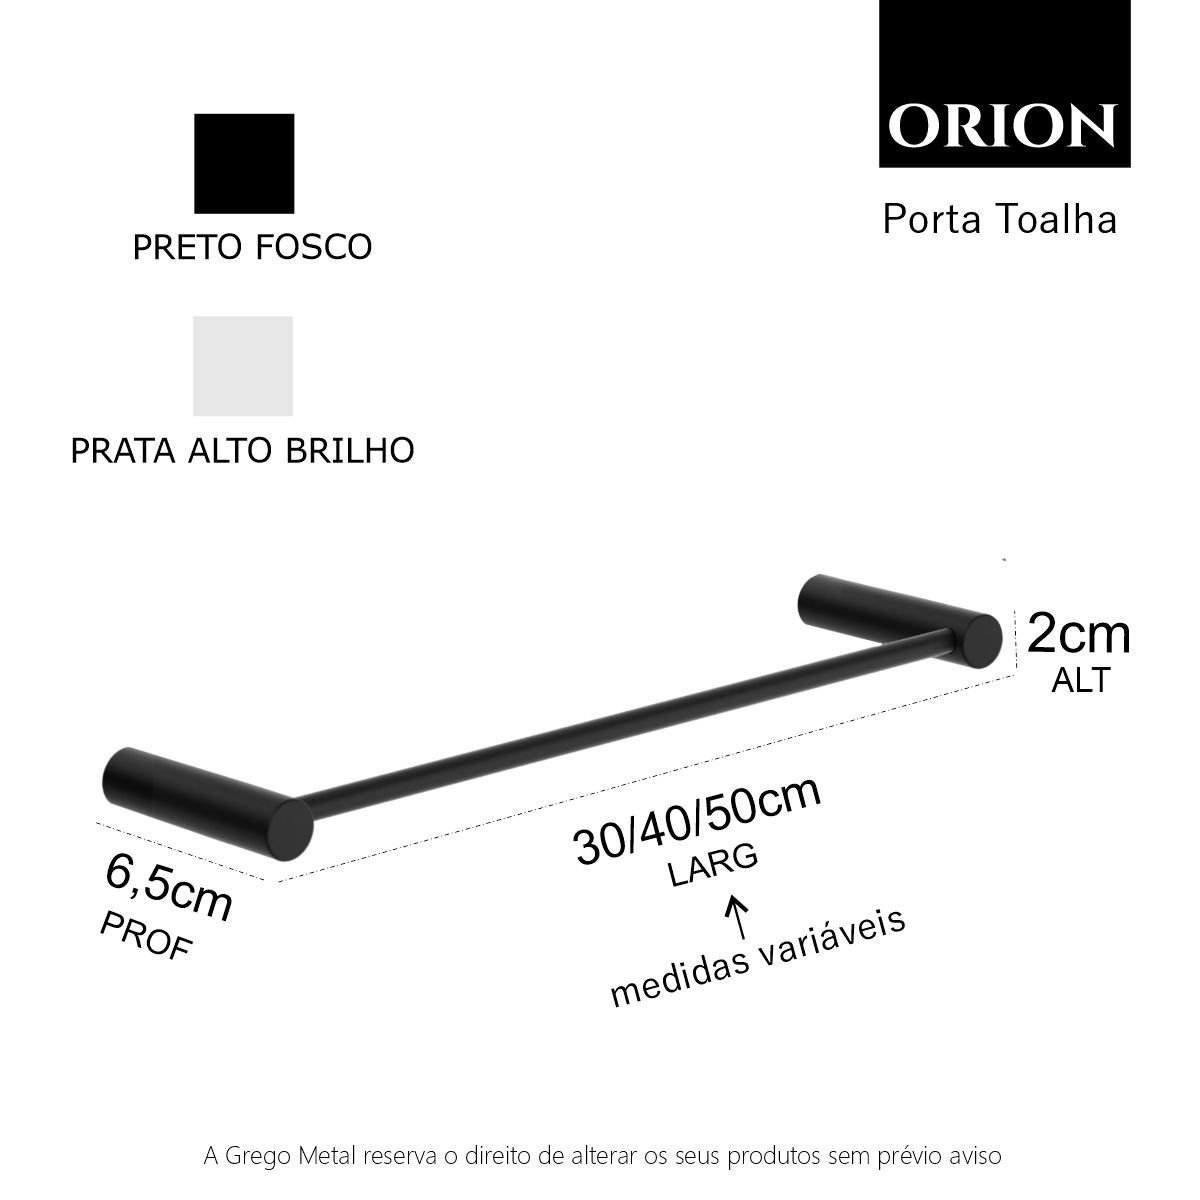 Porta Toalha Rosto Toalheiro 30cm Suporte Redondo Barra Grego Metal Preto Fosco Orion - 5